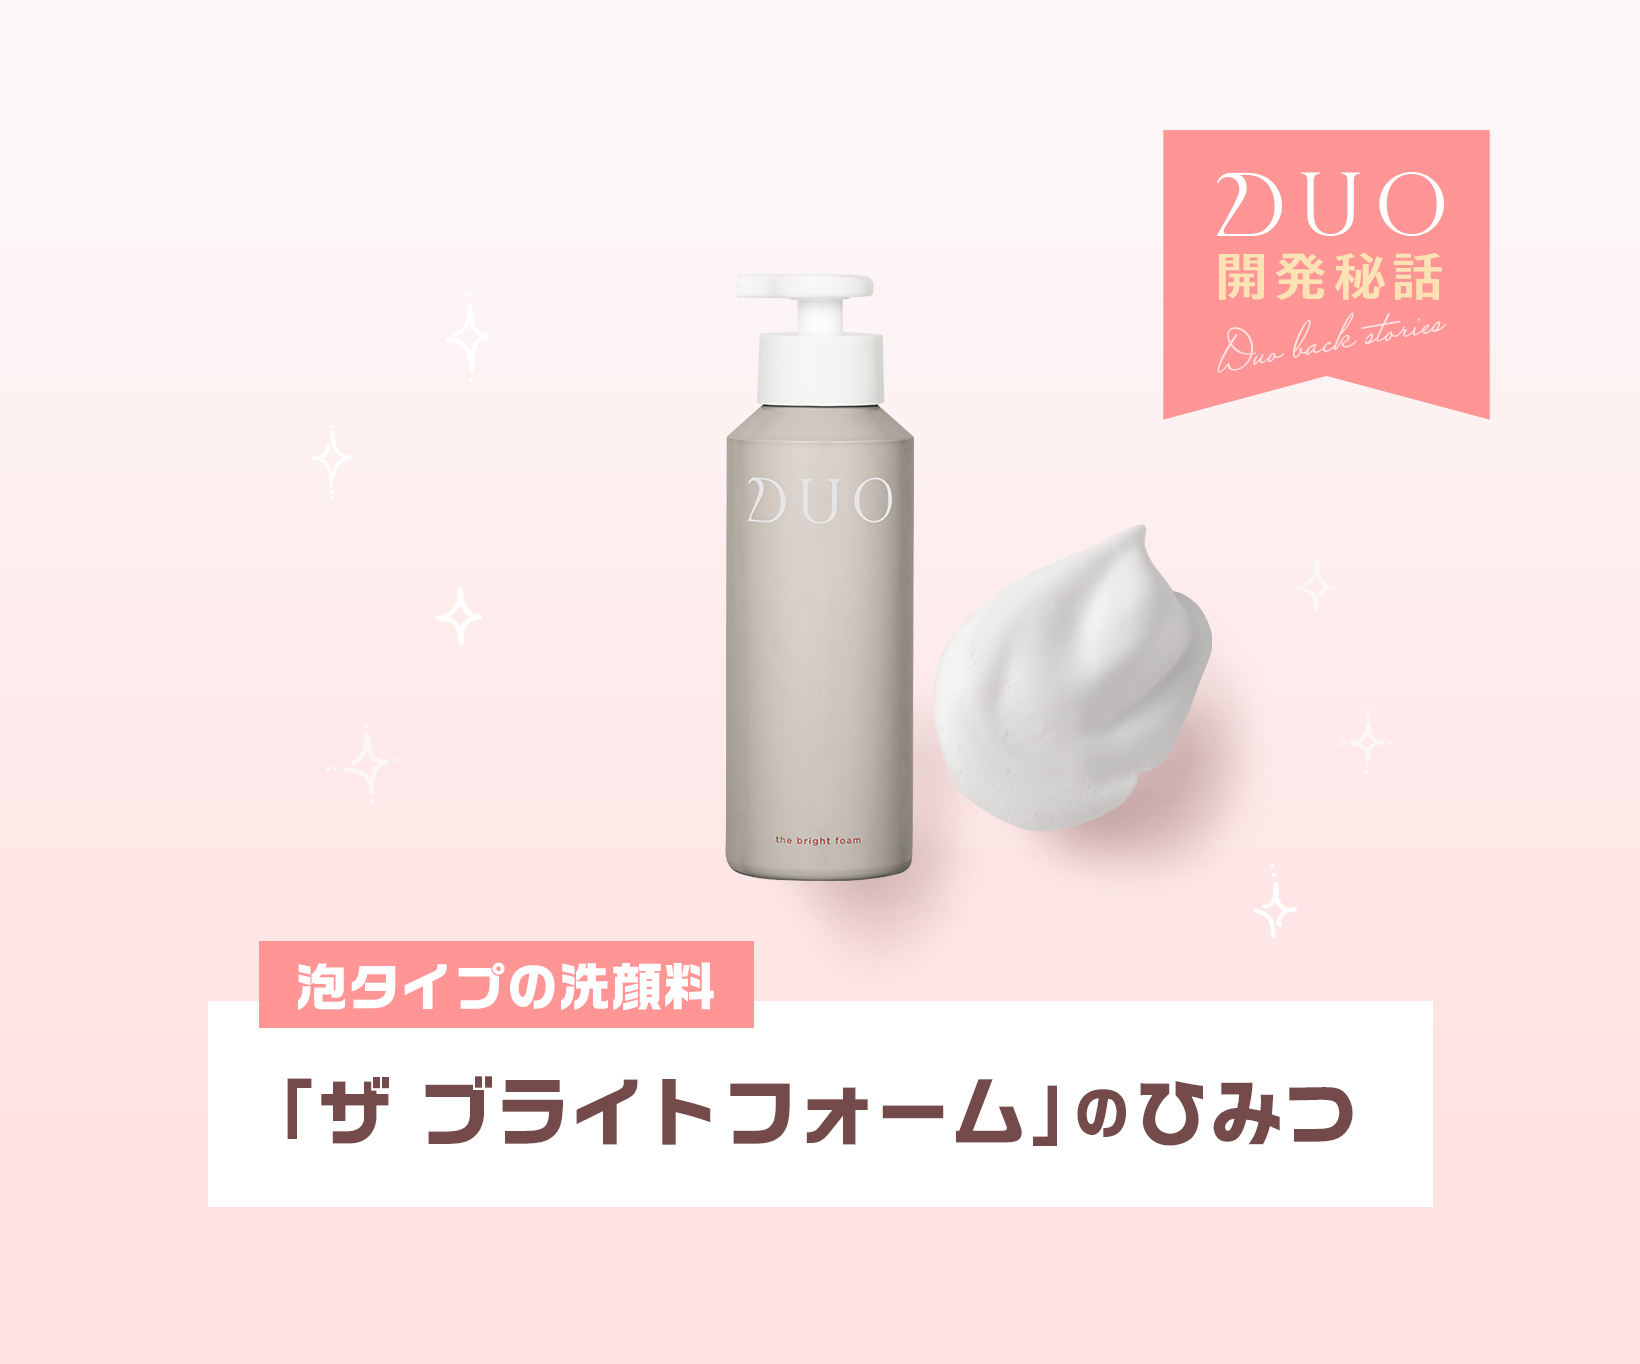 DUO デュオ ザ ブライトフォーム 100g〈泡洗顔〉 ファッション - 洗顔